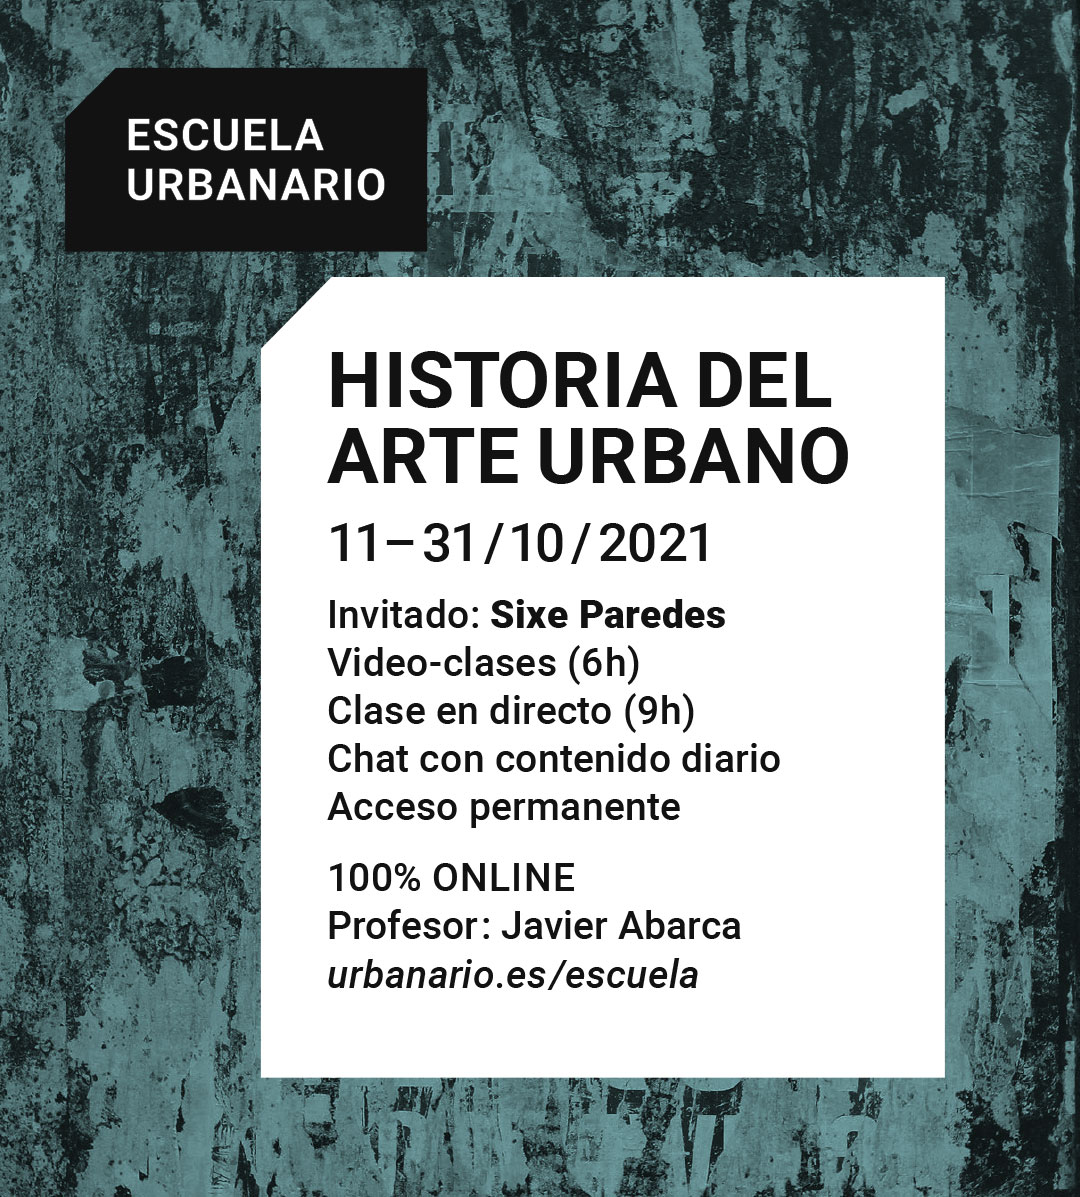 Historia del arte urbano - Escuela Urbanario